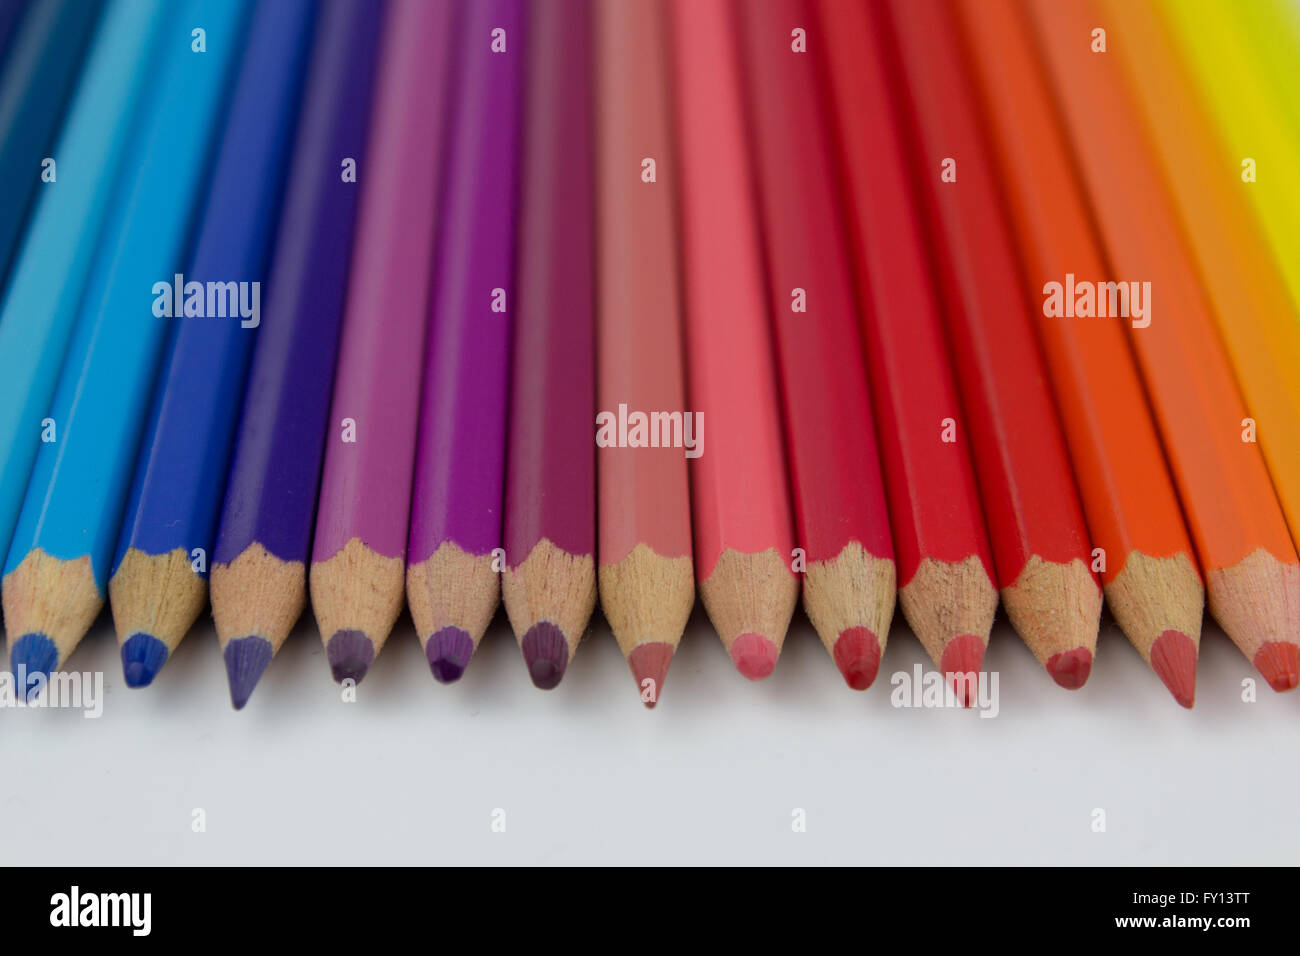 Farbstiften auf weißem Hintergrund - Zeile mit Buntstiften Stockfoto